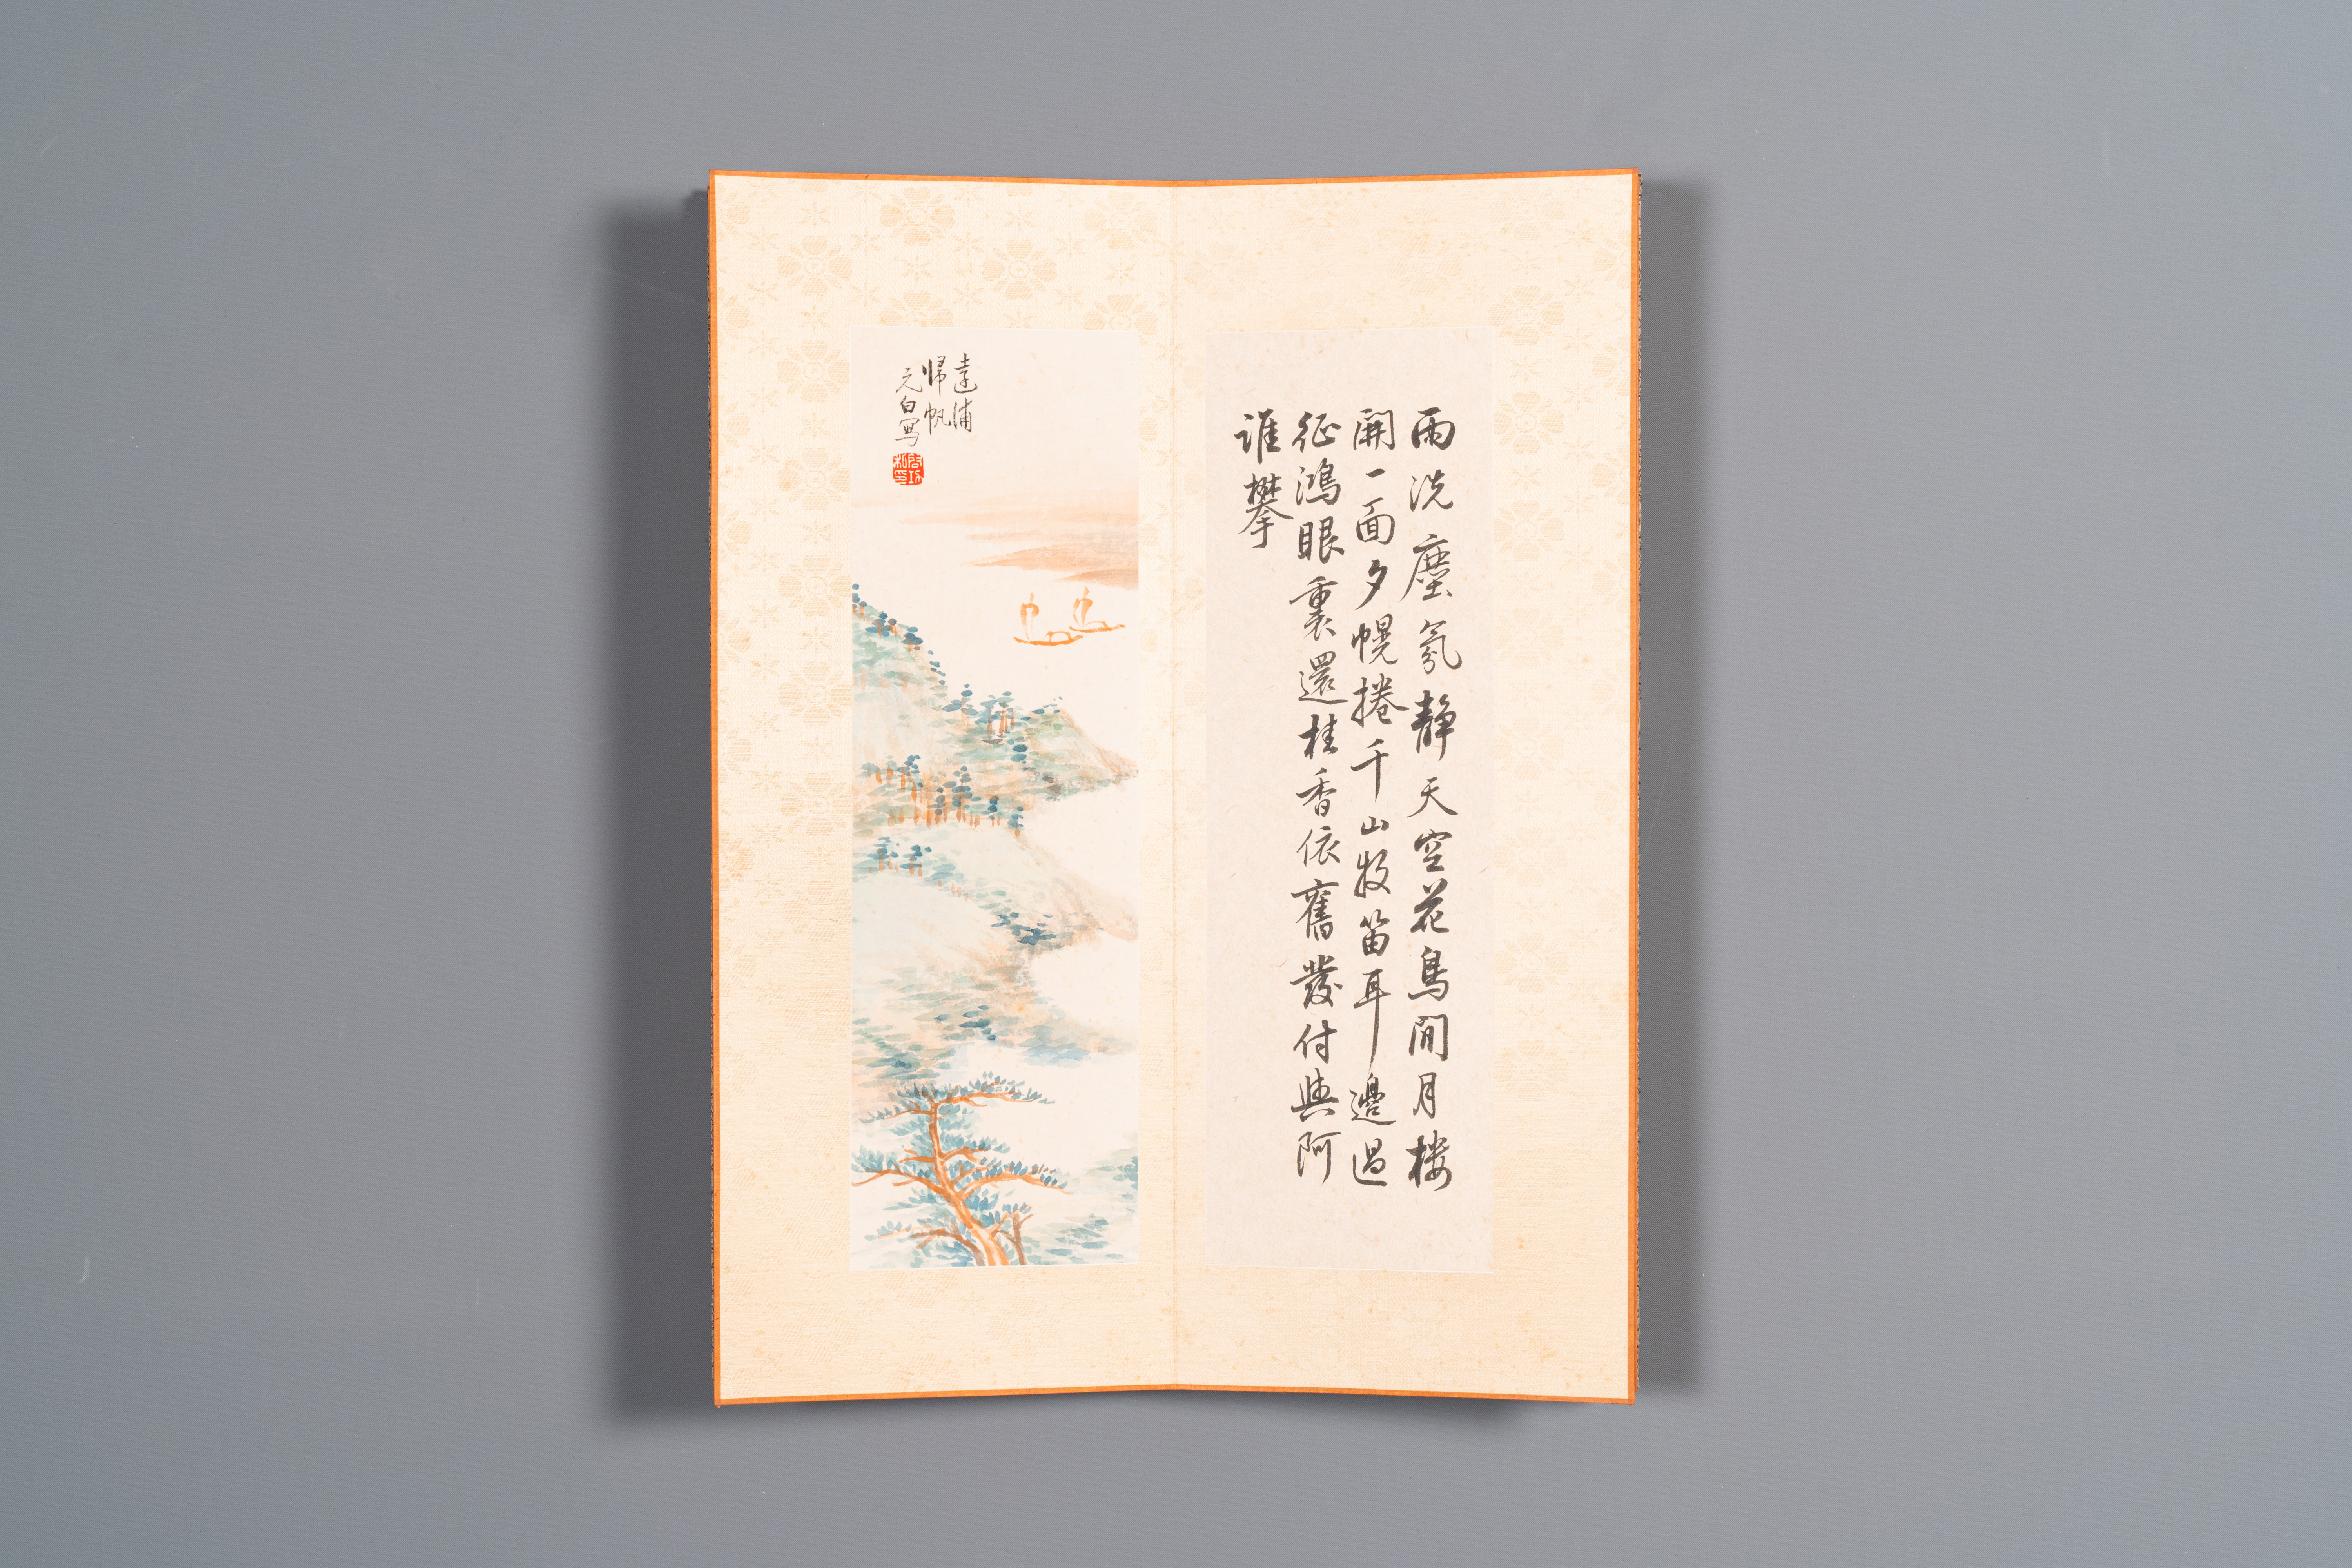 Three albums: 'Jiang Hanting æ±Ÿå¯’æ±€ (1904-1963), Lin Sanzhi æž—æ•£ä¹‹ (1898-1989) and Qi Gong å¯ - Image 21 of 23